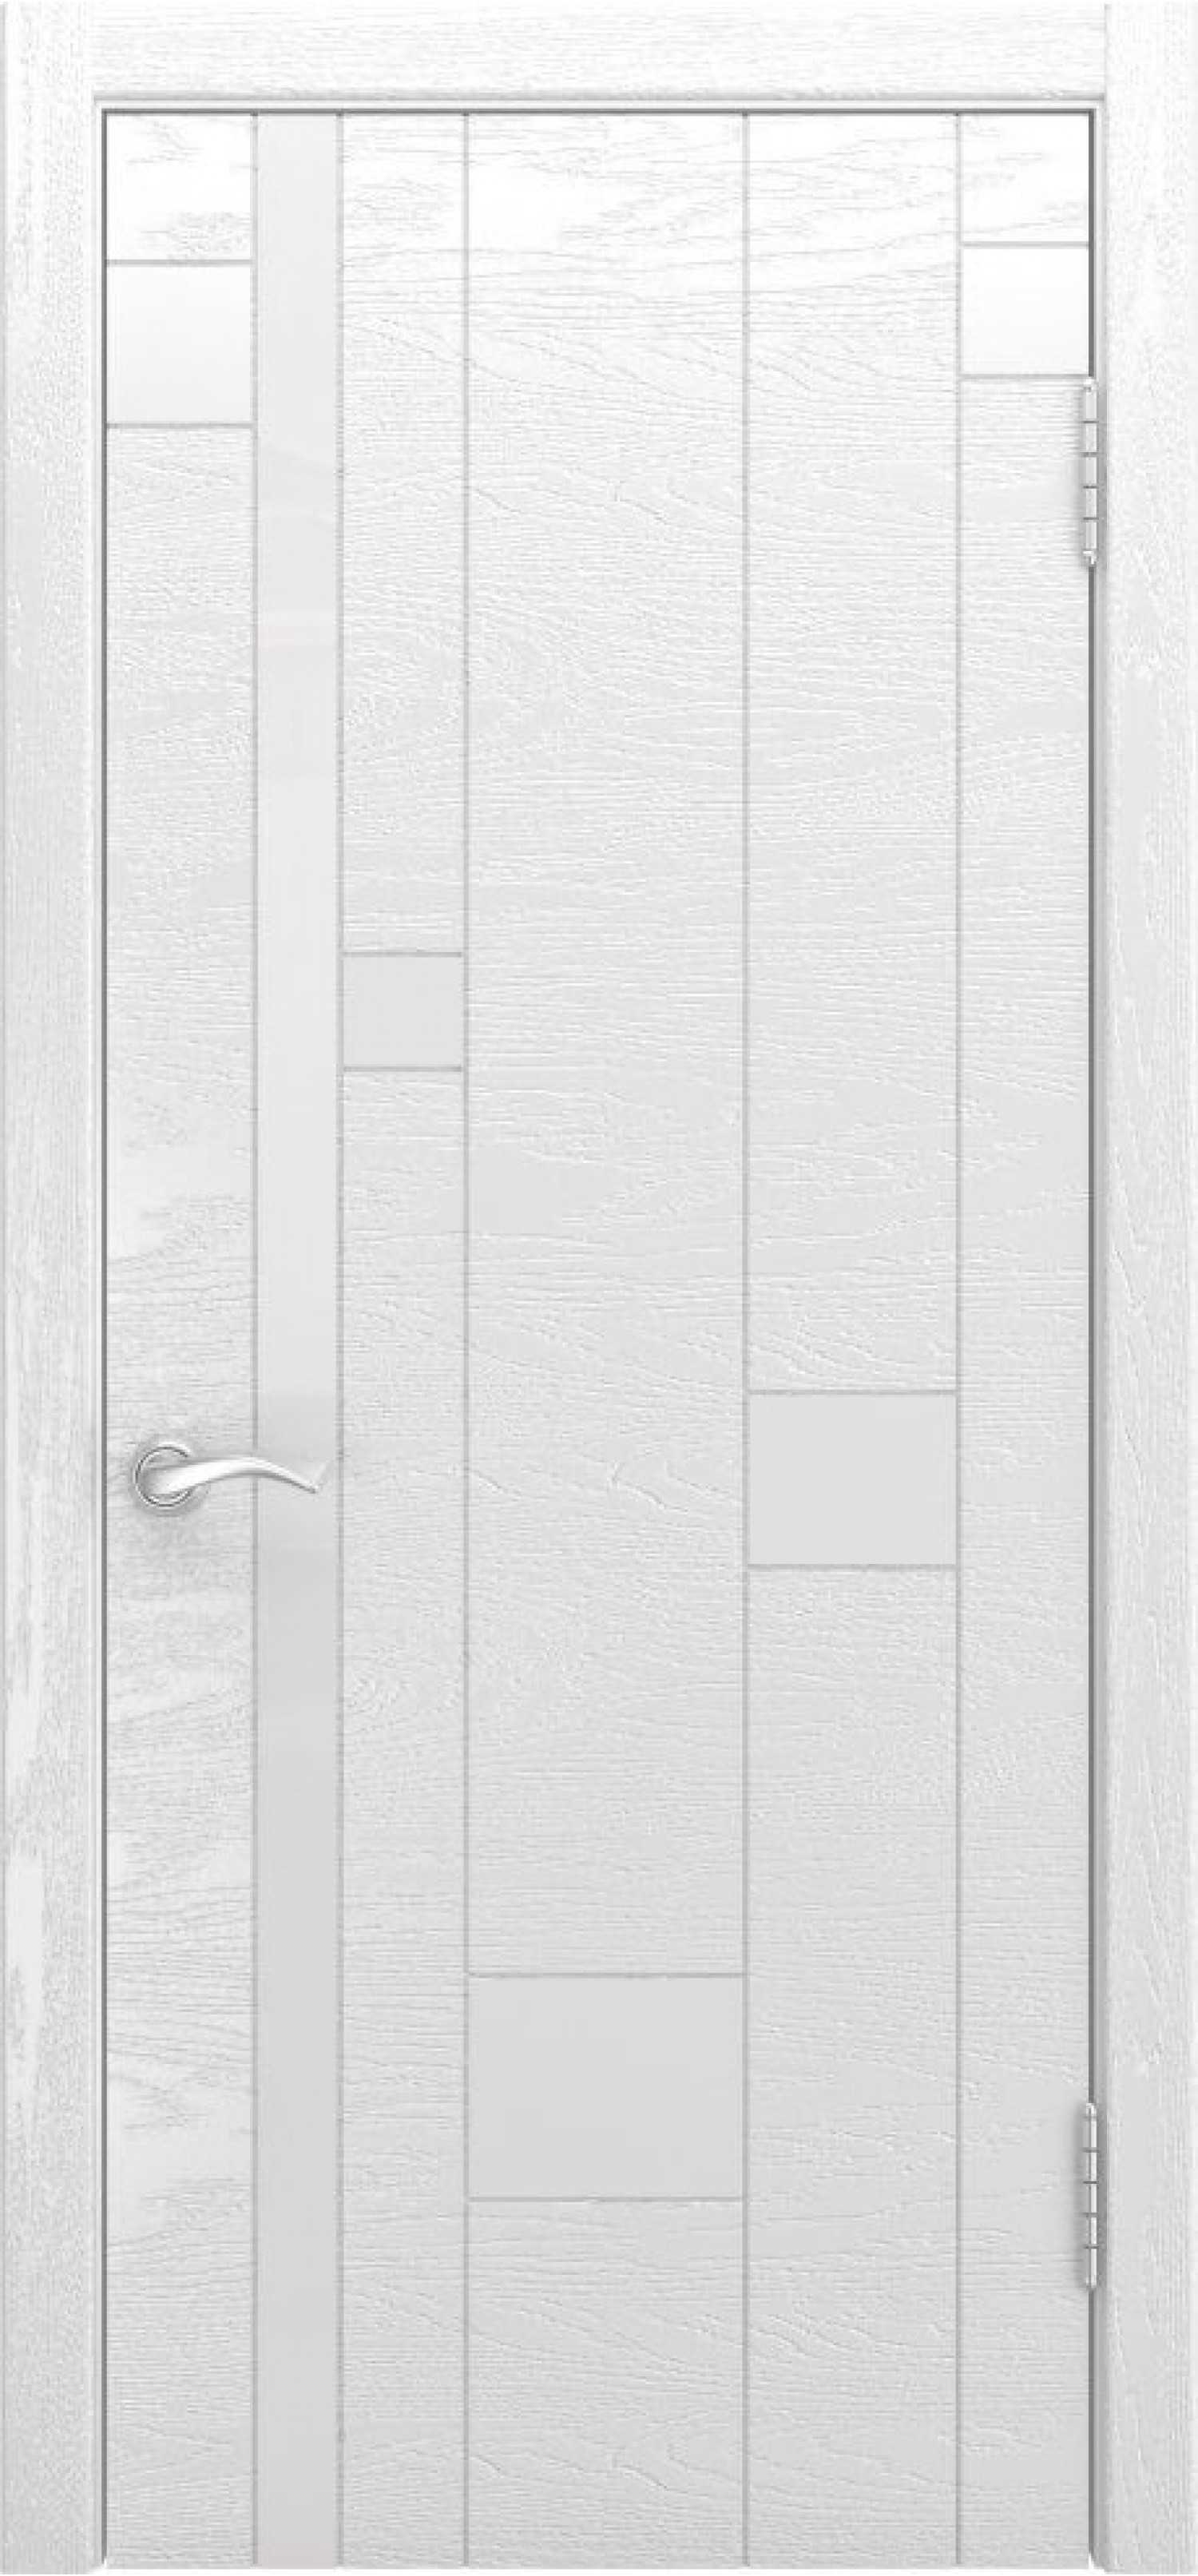 Двери тут дешевые. Межкомнатные двери арт-1 (ясень белая эмаль). Межкомнатная дверь шпон Luxor Орион 3, остеклённая, дуб белая эмаль. Дверь Люксор эмаль межкомнатная. Ульяновская дверь арт-1 ясень белая эмаль.